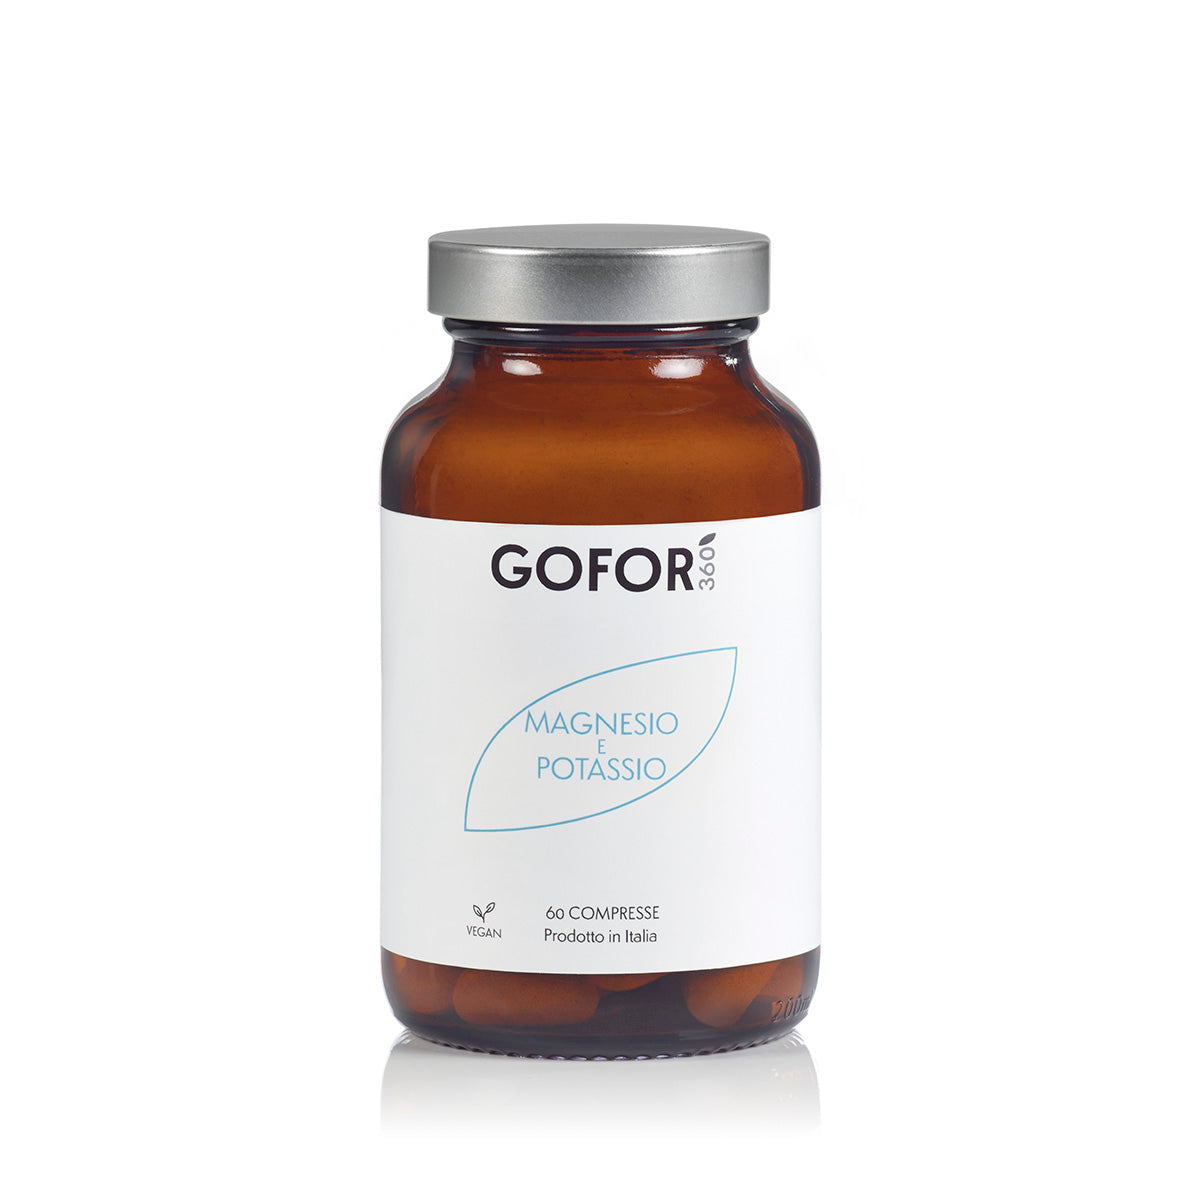 GOFOR360 - Magnesio e Potassio